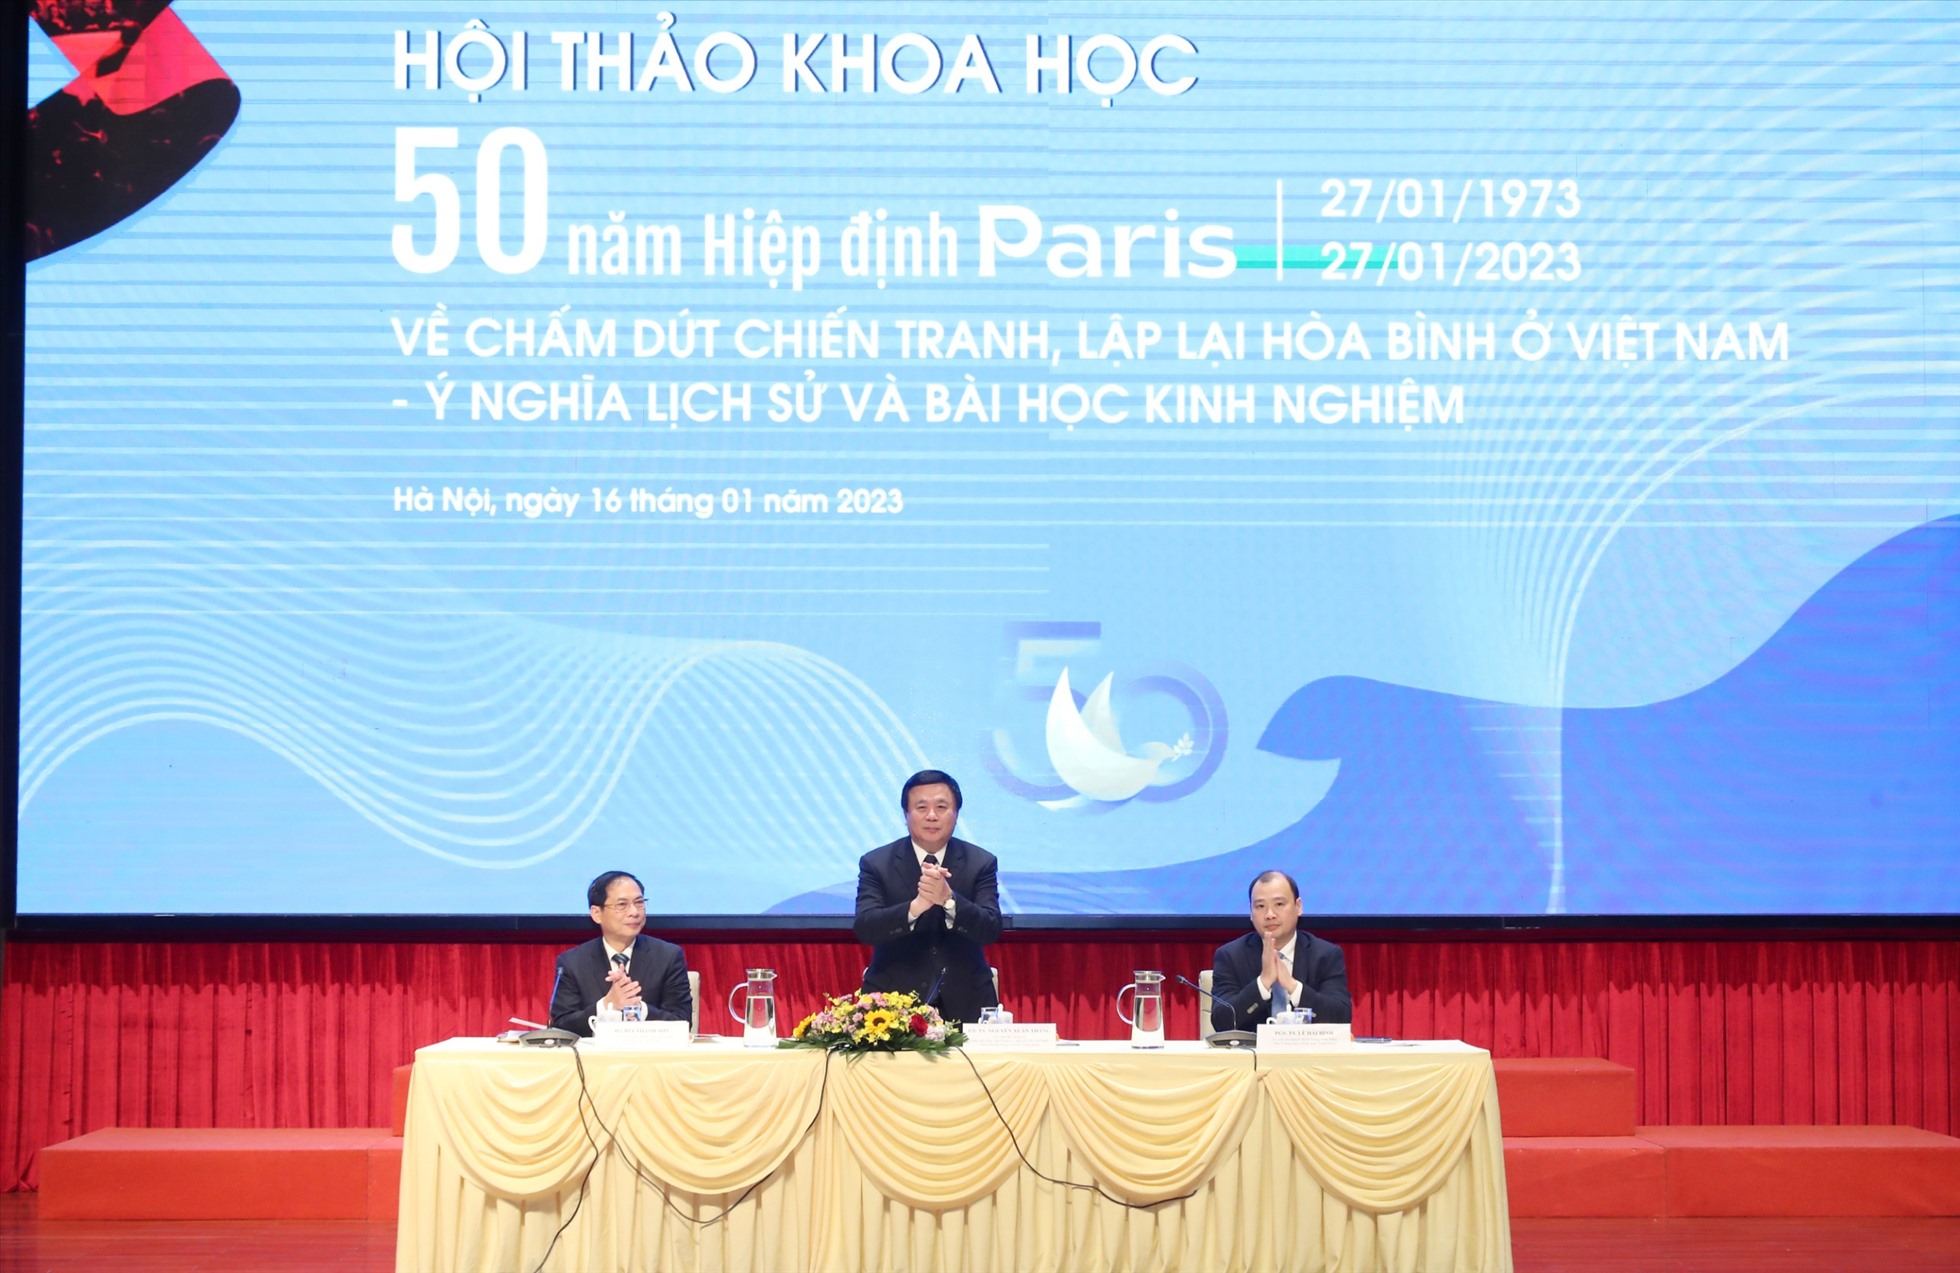 Hiệp định Paris là đỉnh cao thắng lợi của ngoại giao Việt Nam